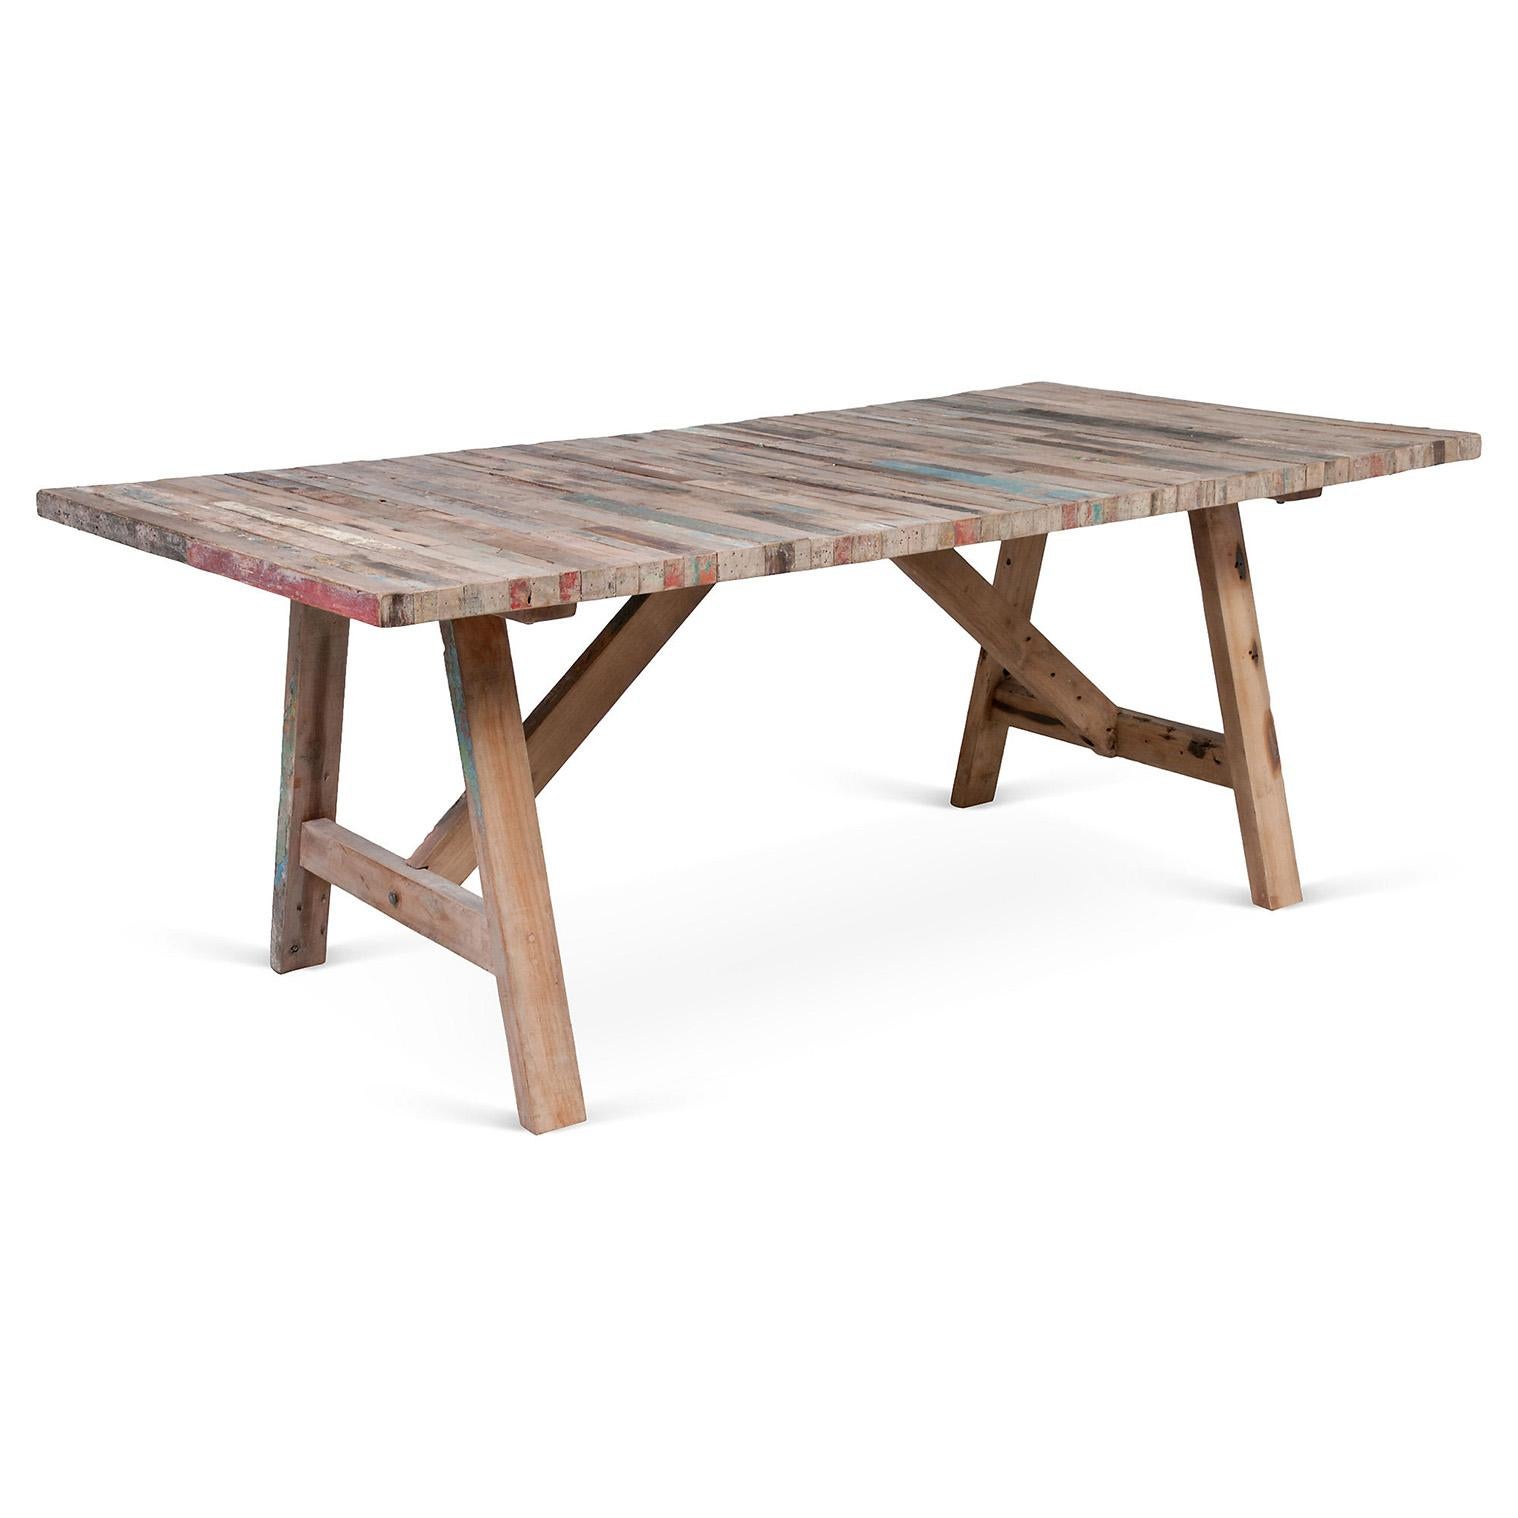 Fabriqué à partir d'un bateau de pêche récupéré à Gaines, le bois de cette table à tréteaux se patinera naturellement avec le temps ; une pièce unique en bois, avec des couleurs marron et bleu.